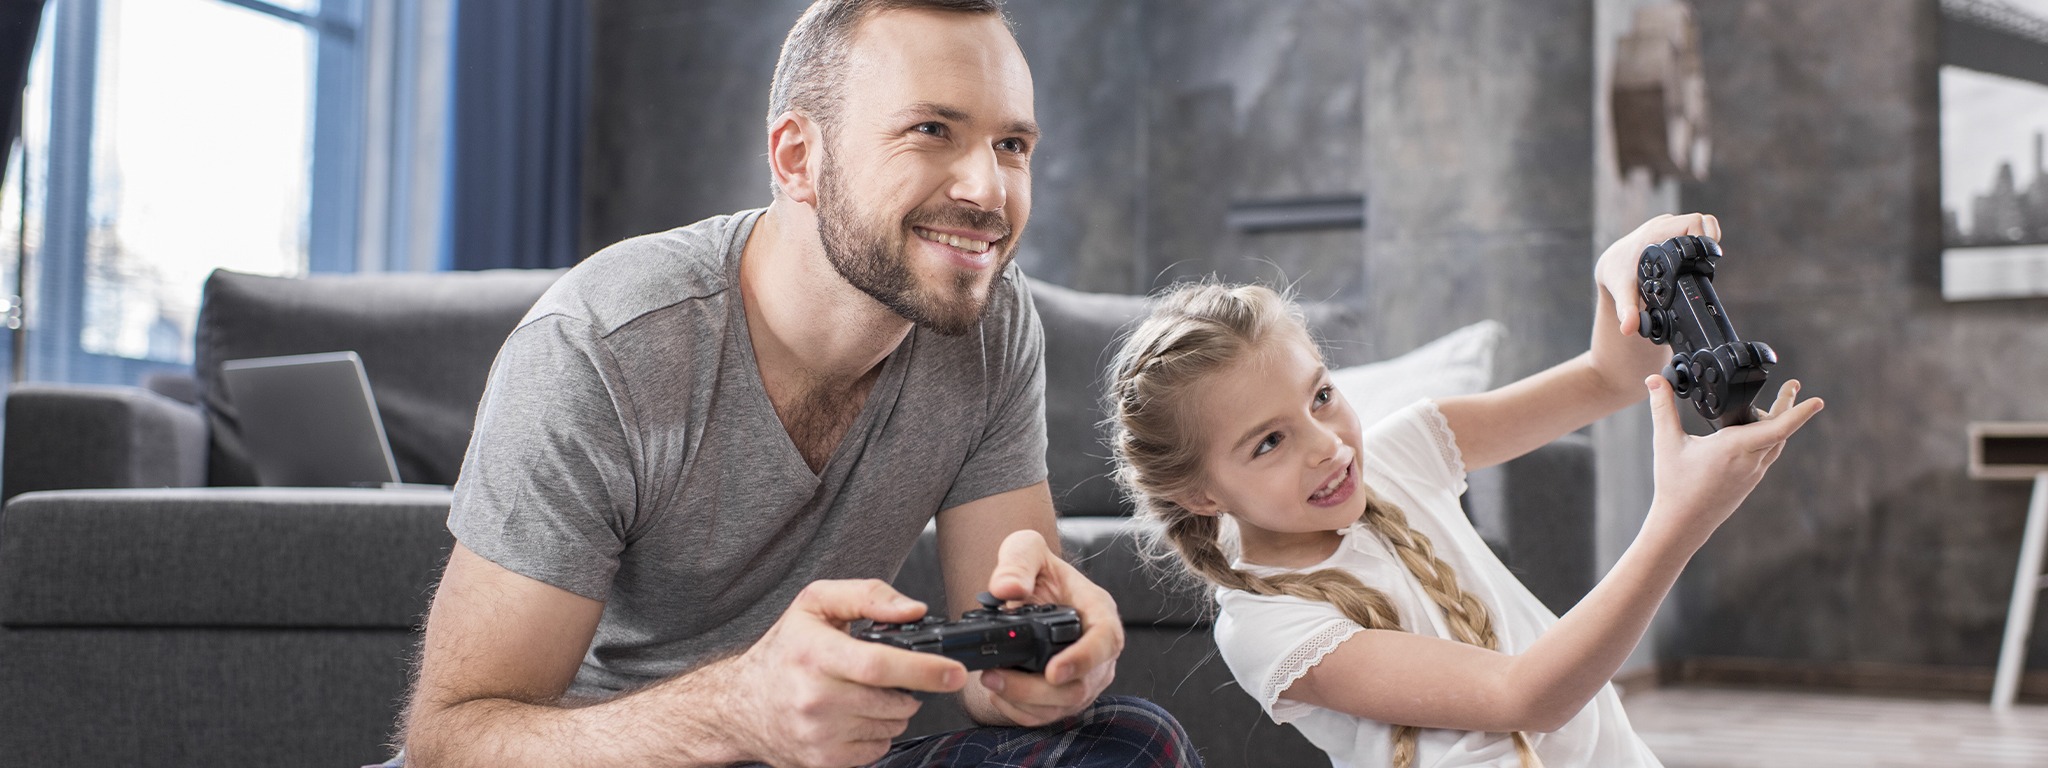 自宅のカーペットの上に座ってビデオゲームをプレイする父娘